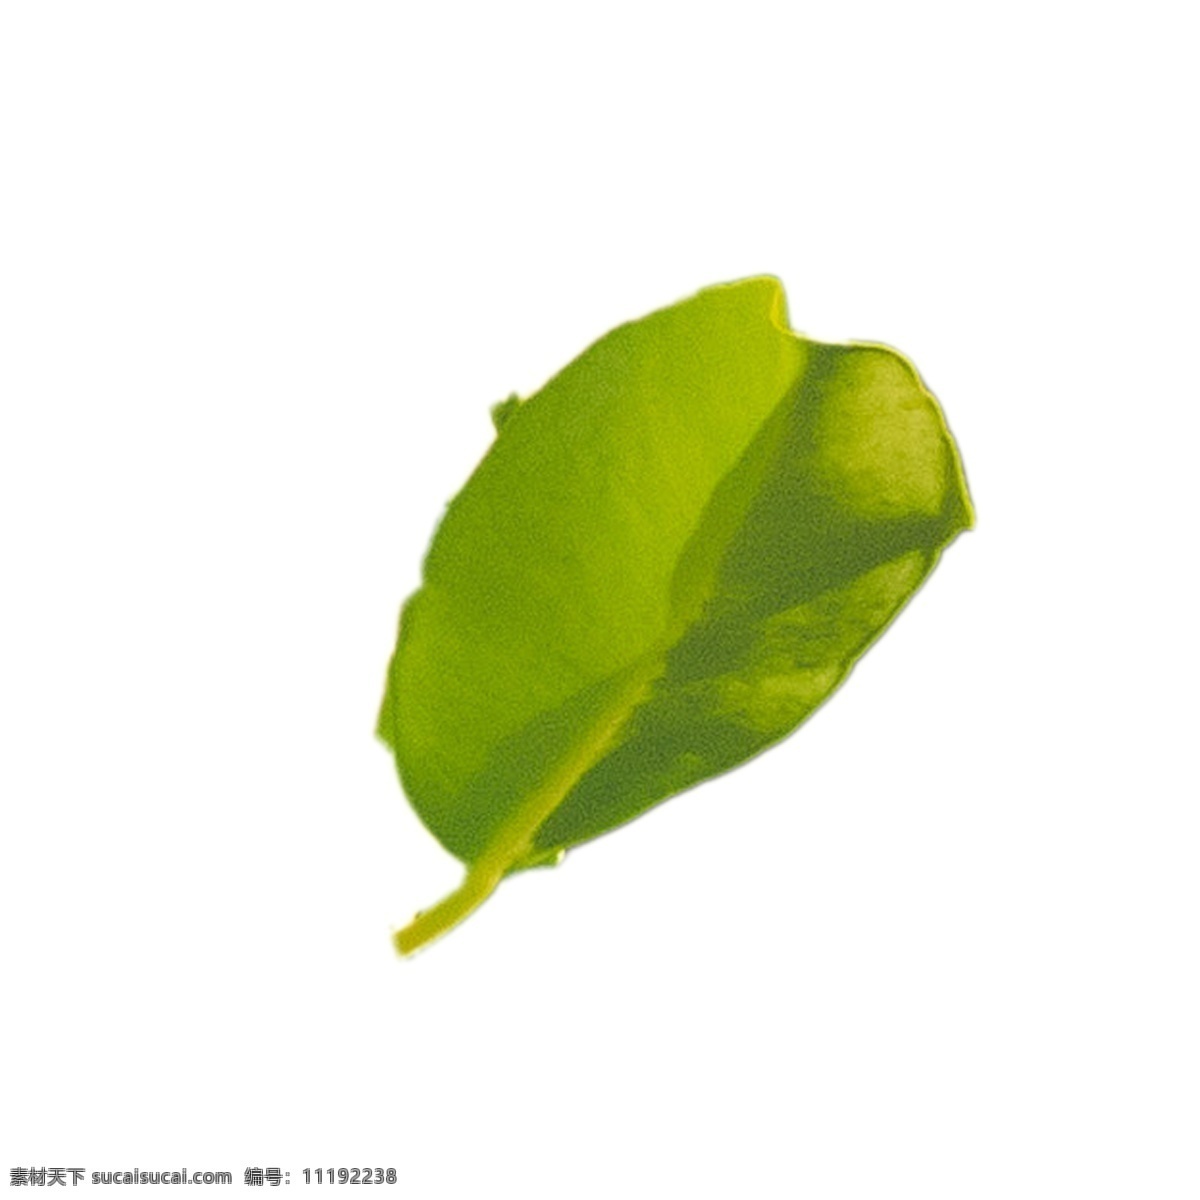 嫩绿 植物 叶子 嫩绿树叶 植物叶子 树叶 春天绿叶 卡通插图 创意卡通下载 插图 png图下载